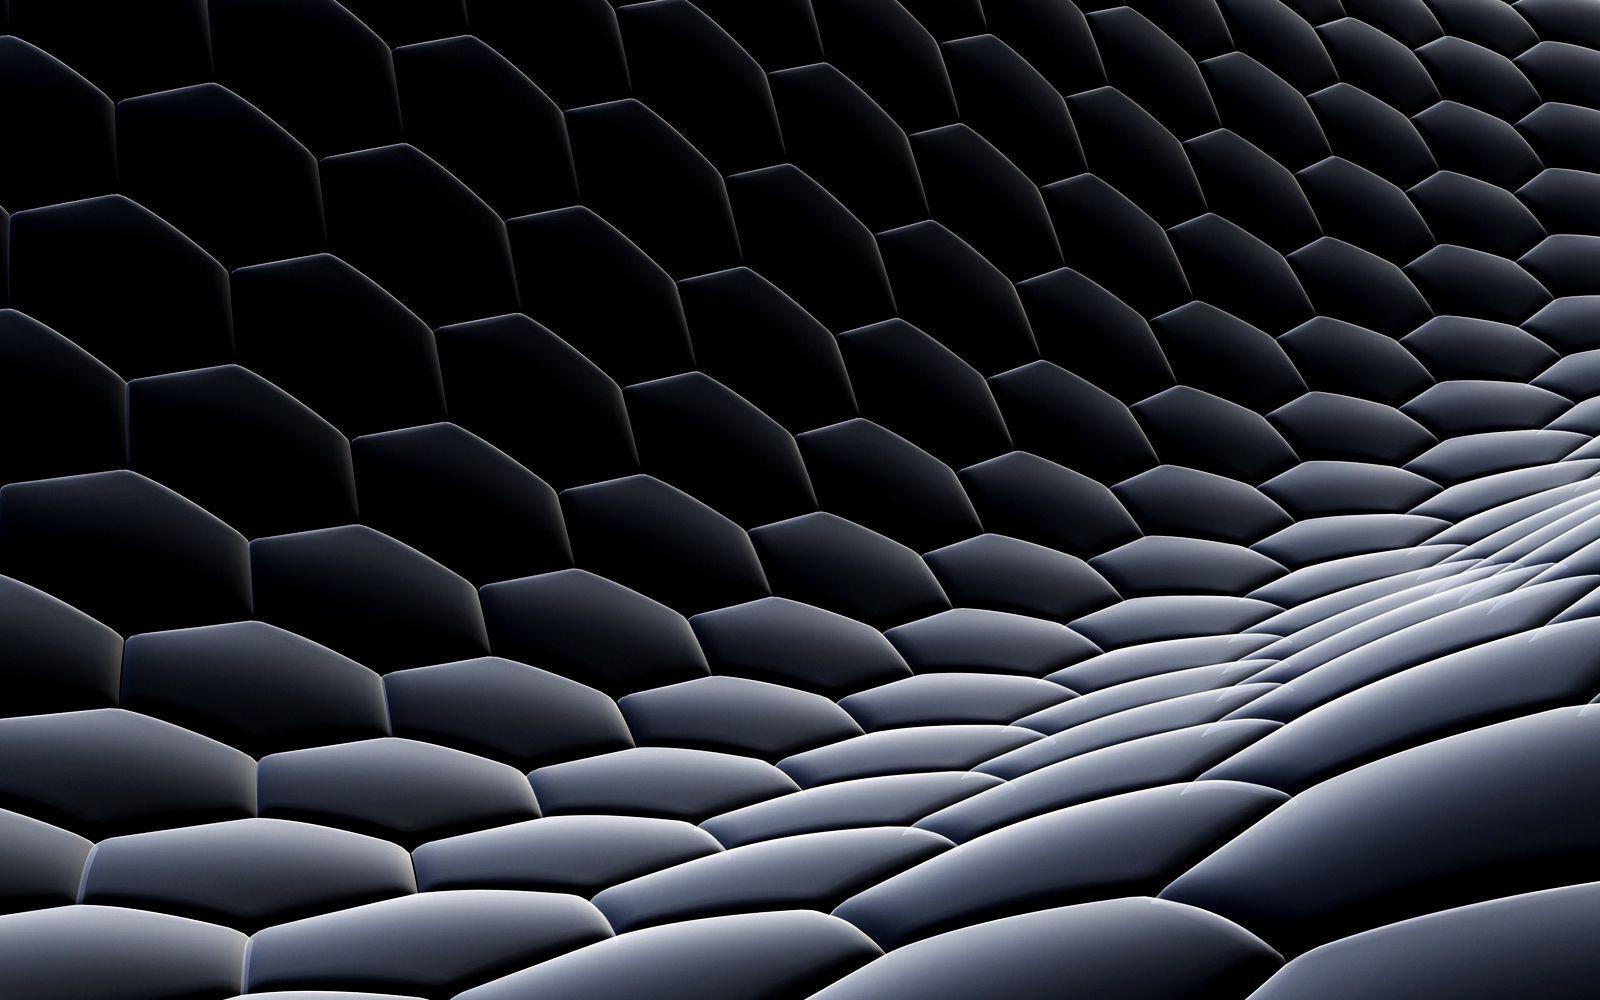 3D Hexagonal Dark HD Wallpaper Widescreen for Desktop PC. Идеи для